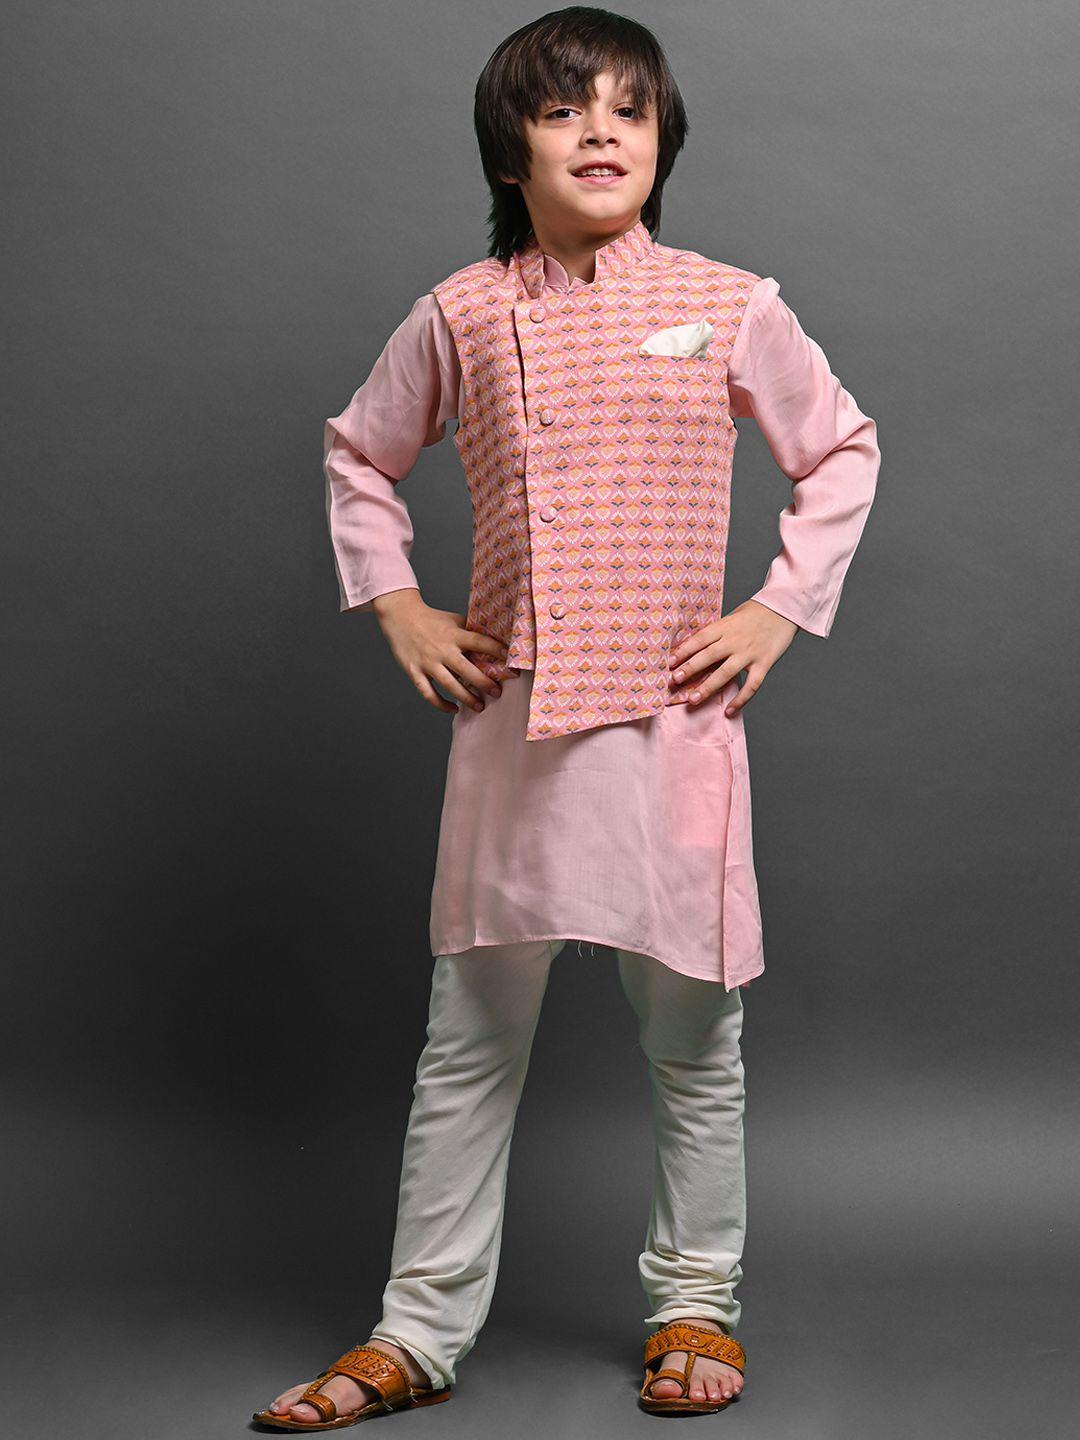 vesham boys mandarin collar kurta with pyjamas & ethnic motifs printed nehru jacket